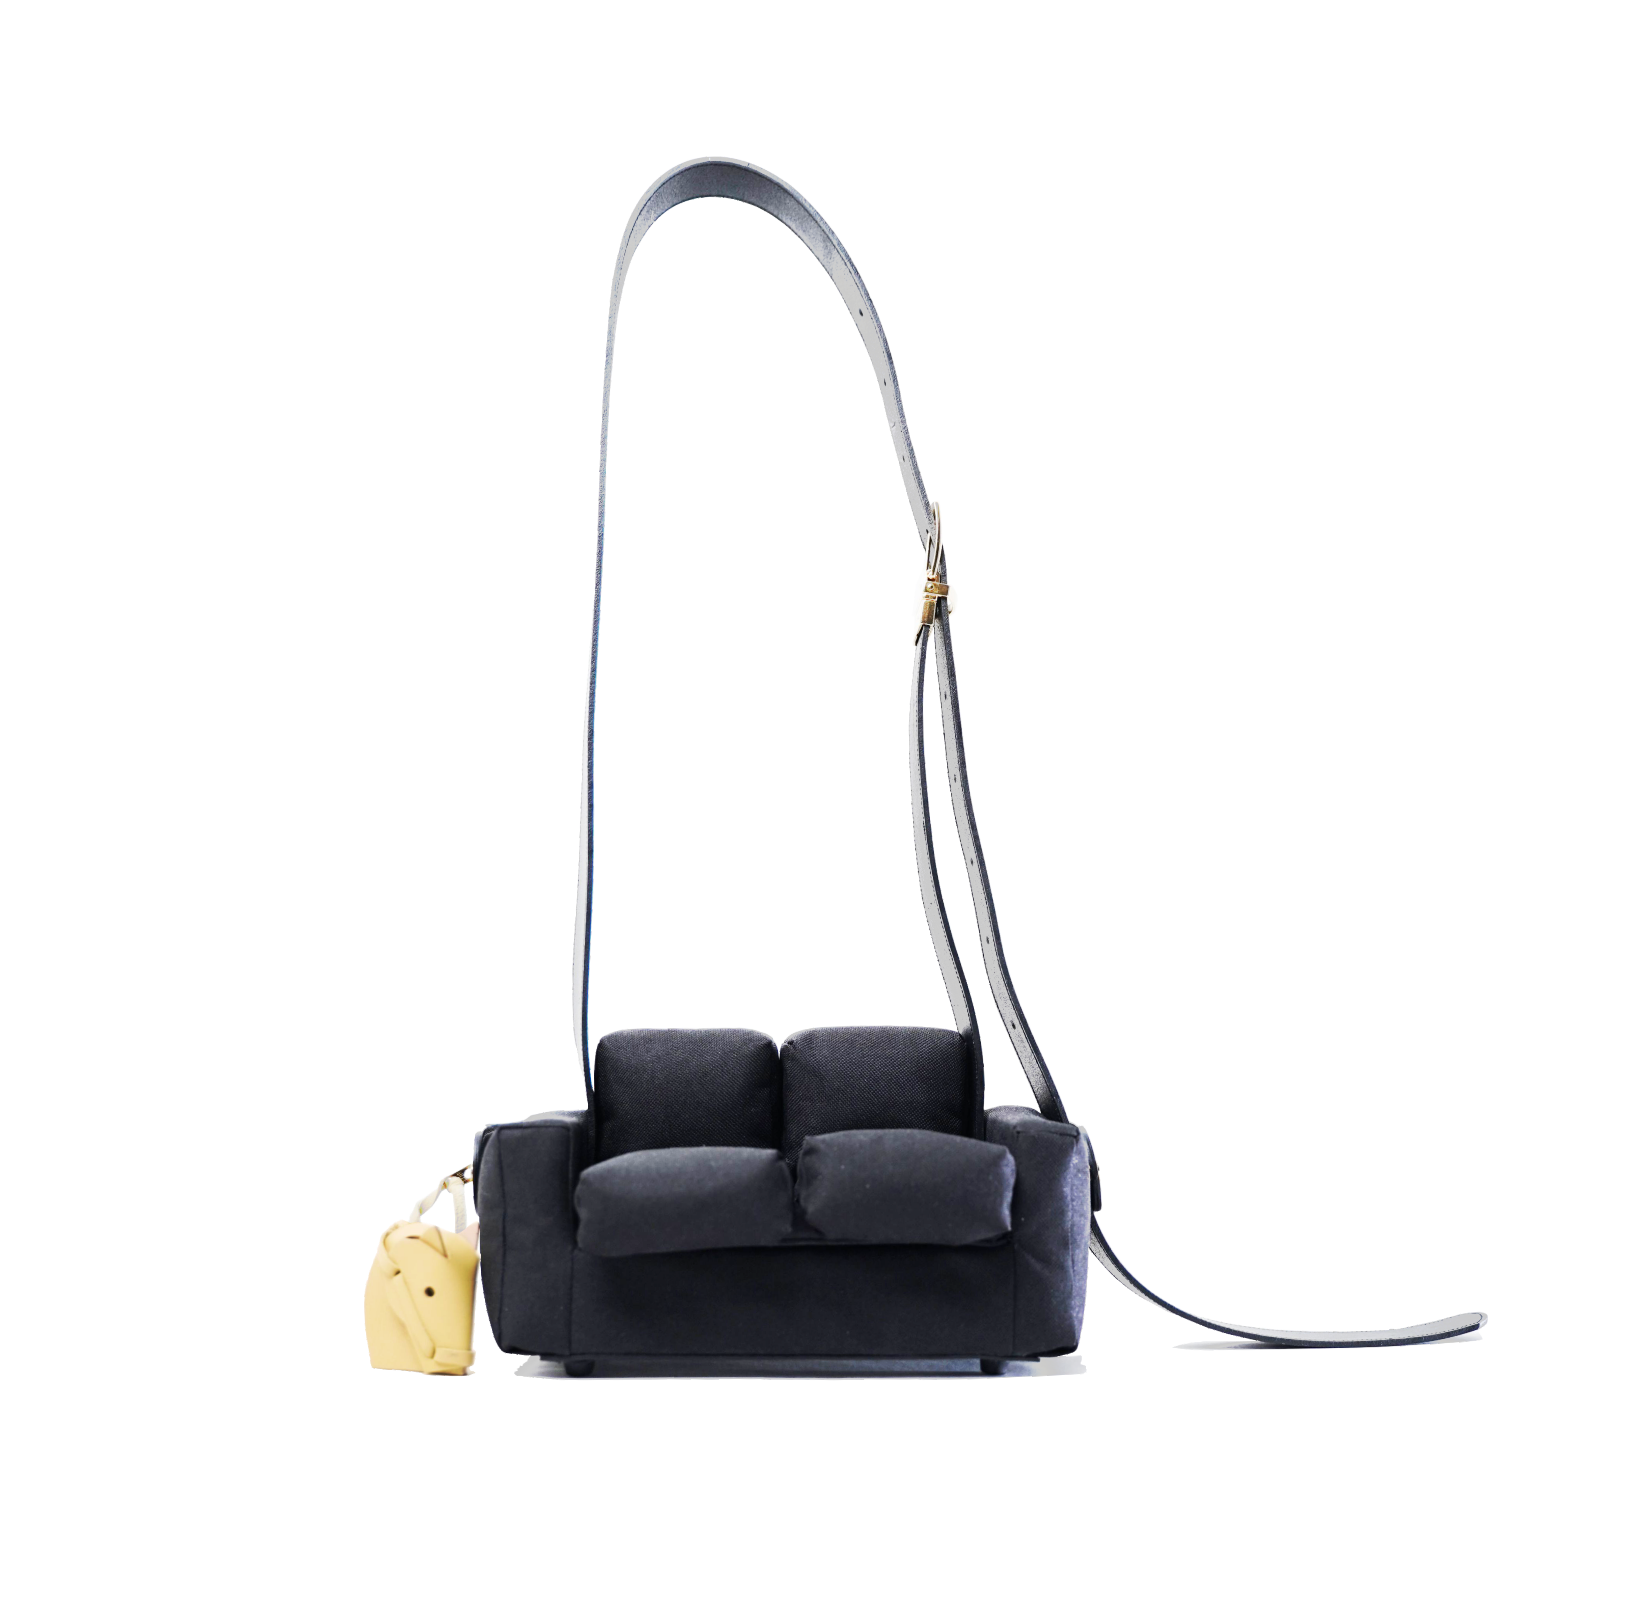 Conceptual Crossbody Bag in Sofa Design